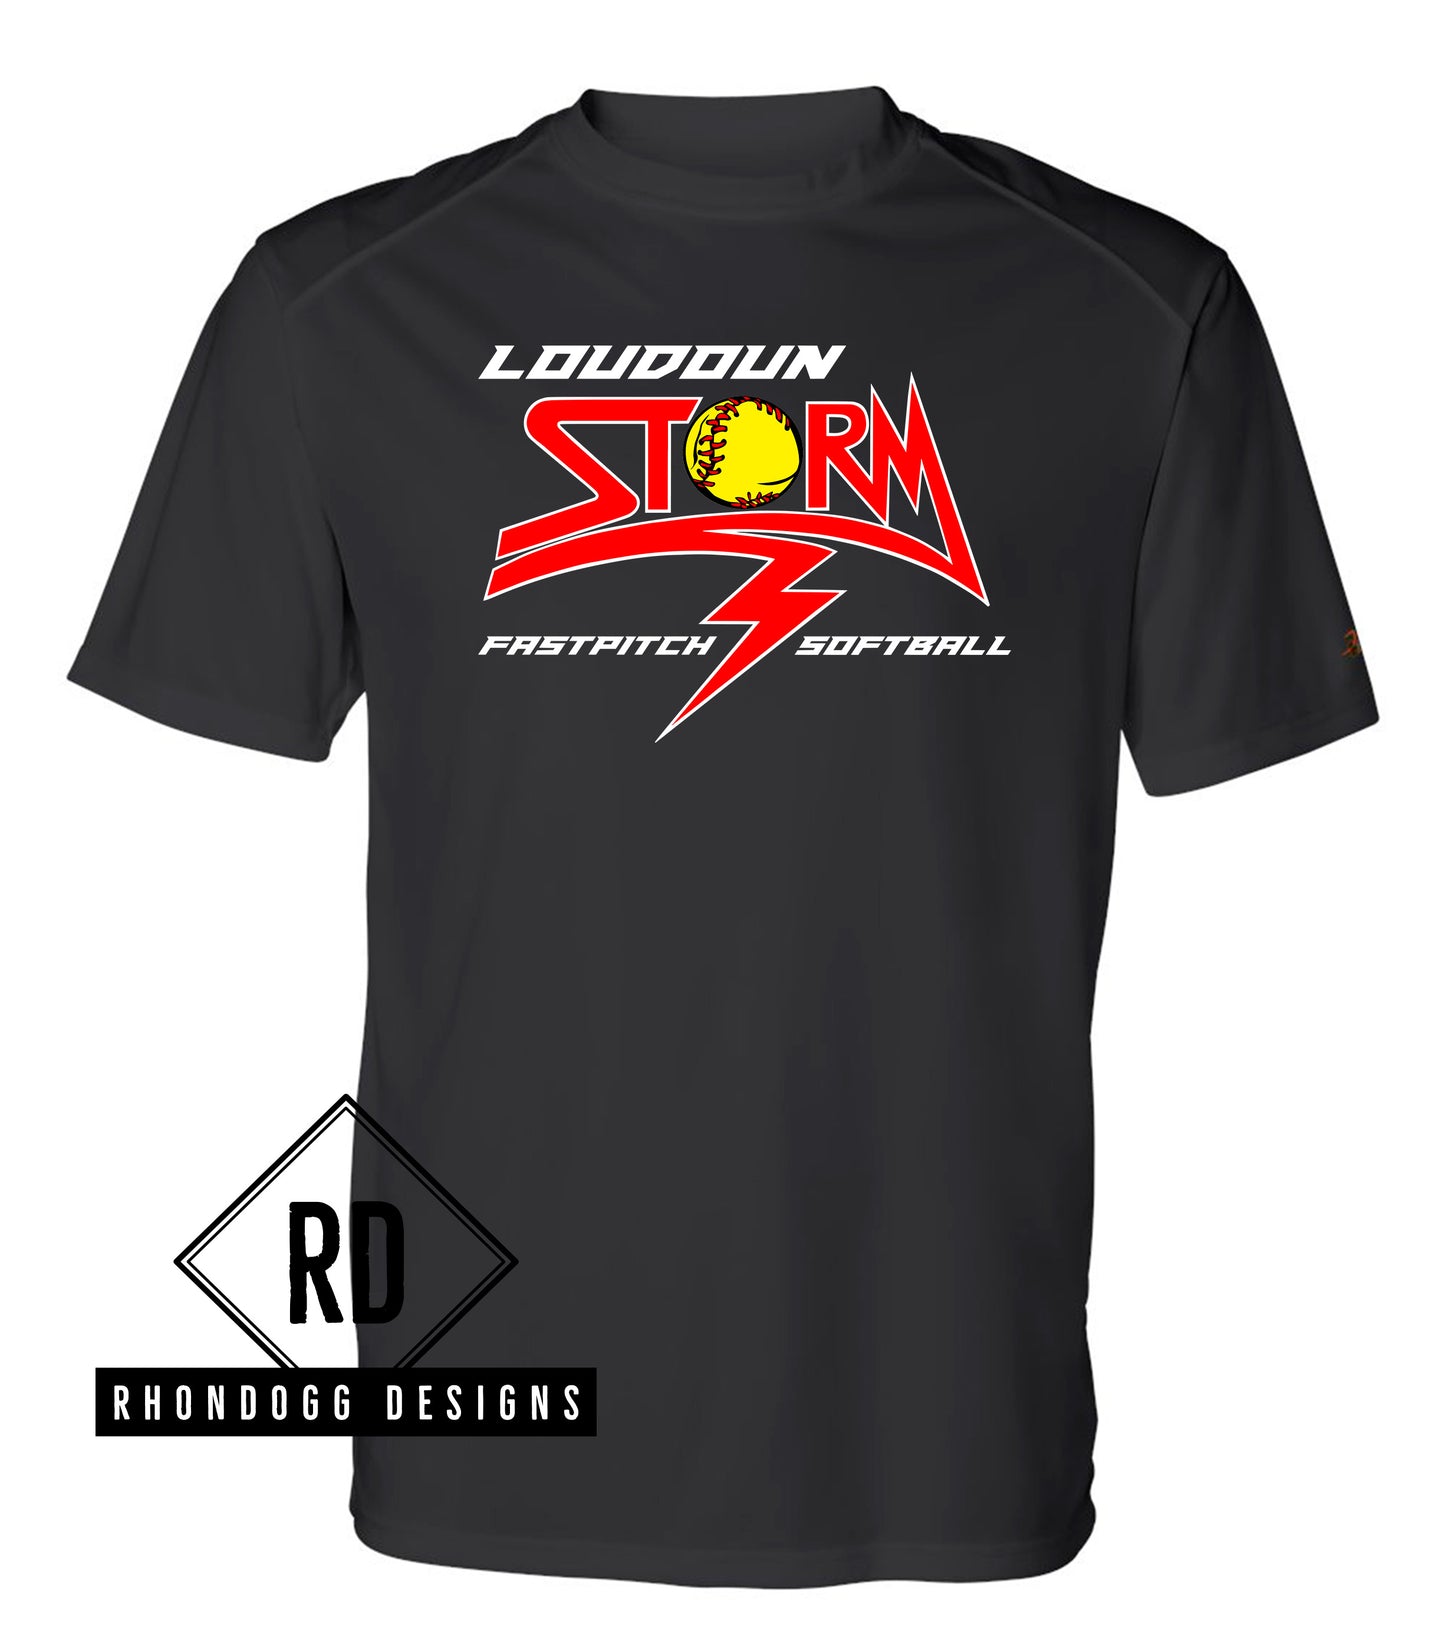 Loudoun Storm Performance Shirt